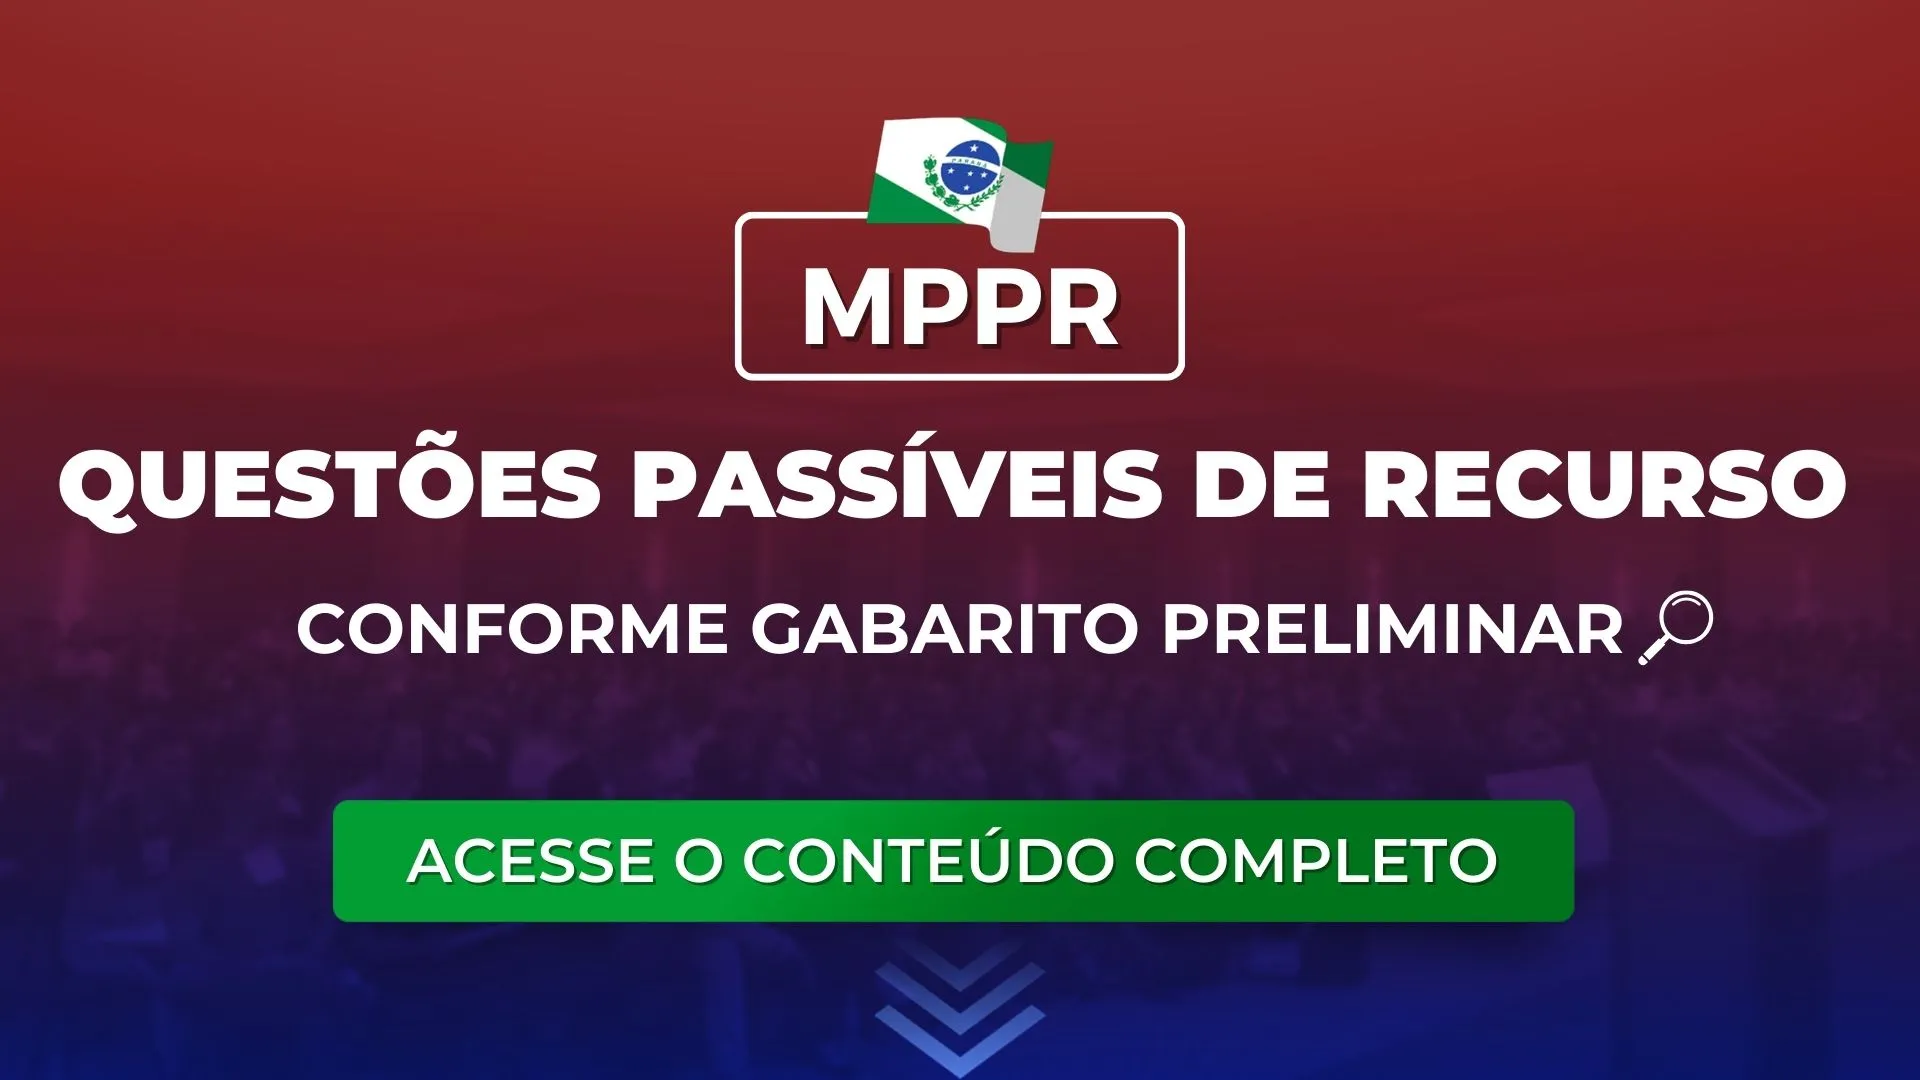 MPPR: Questões passíveis de recurso conforme gabarito preliminar